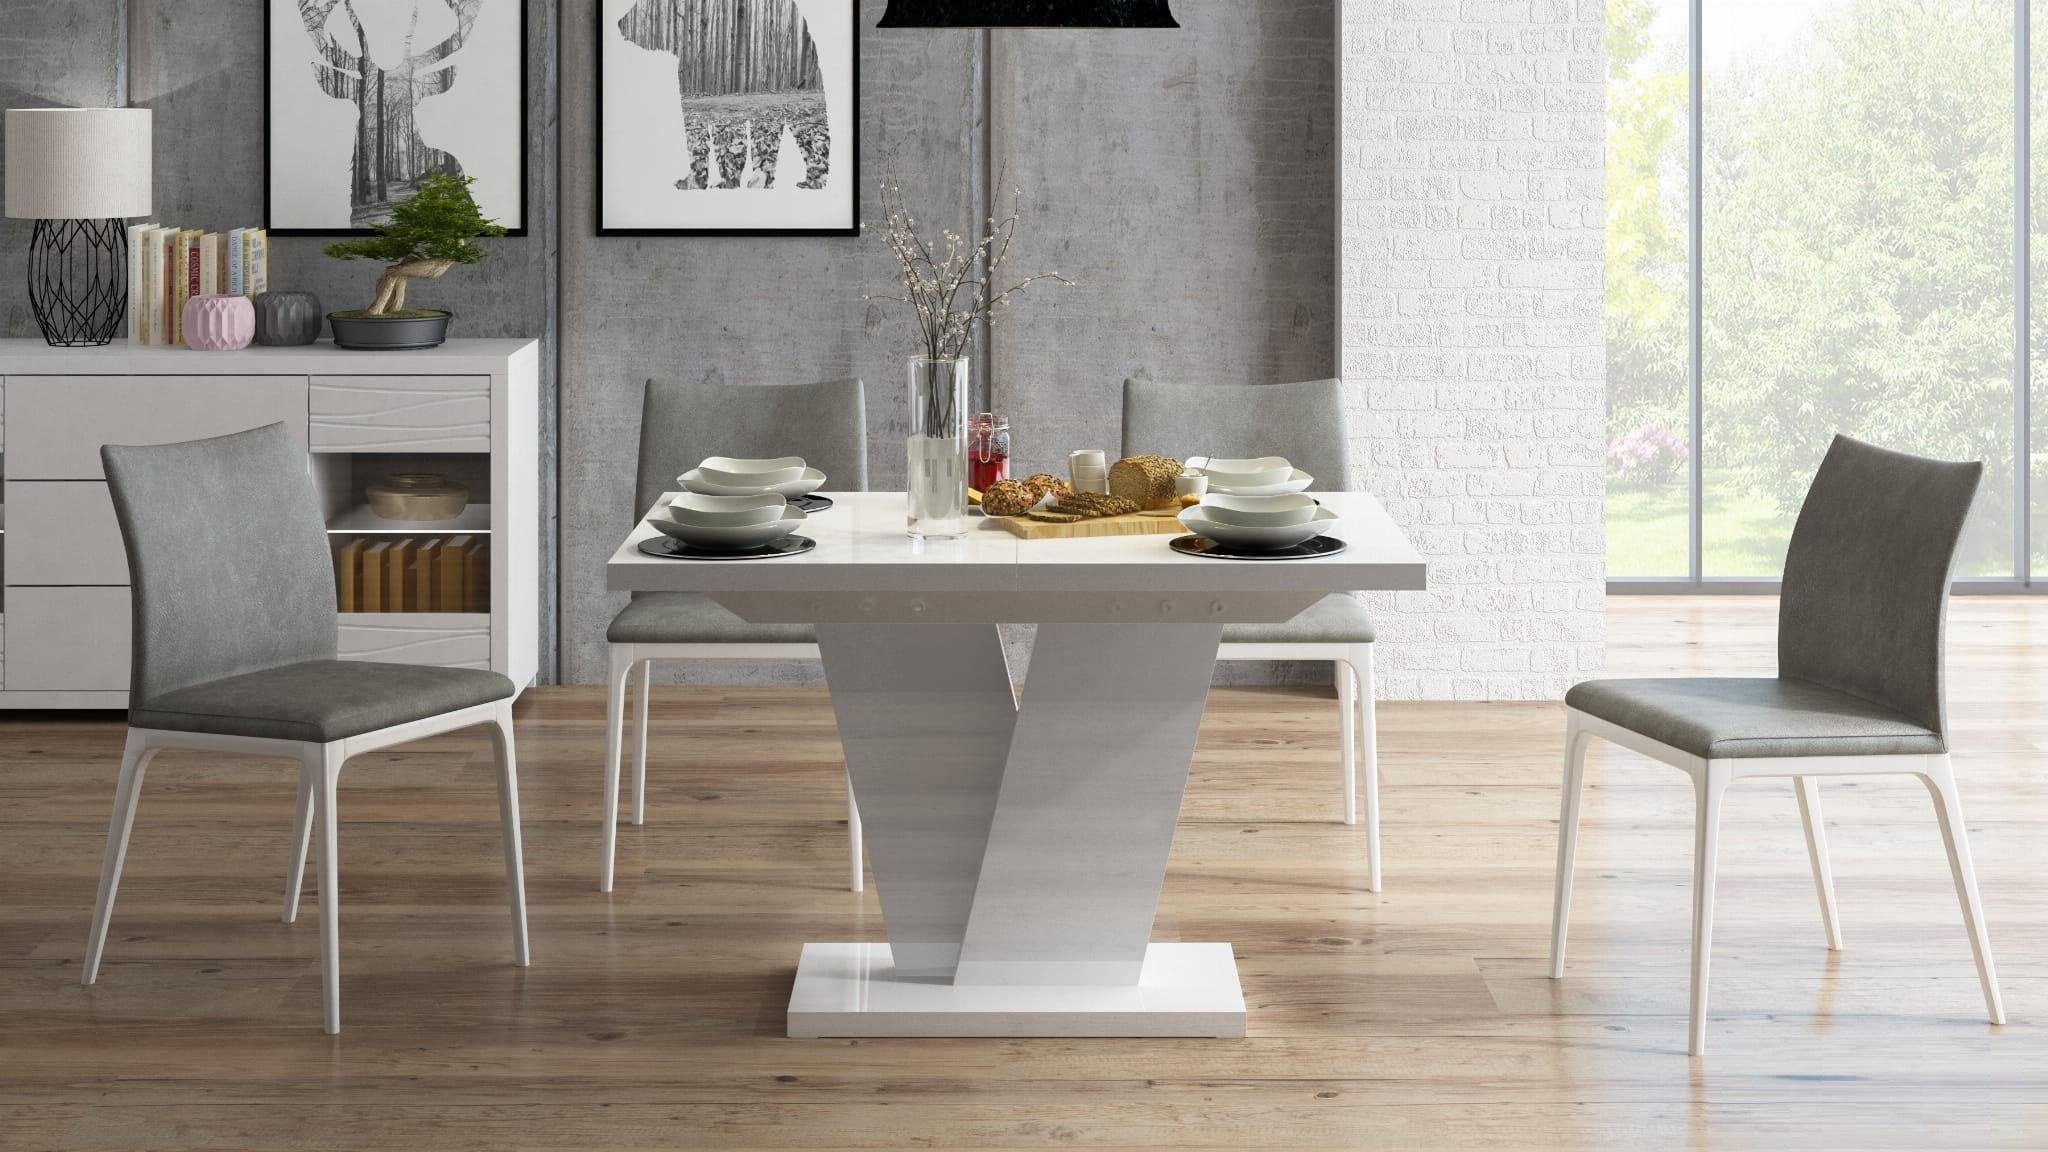 designimpex Esstisch Design Esstisch Tisch MA-333 Hochglanz ausziehbar 120 bis 160 cm